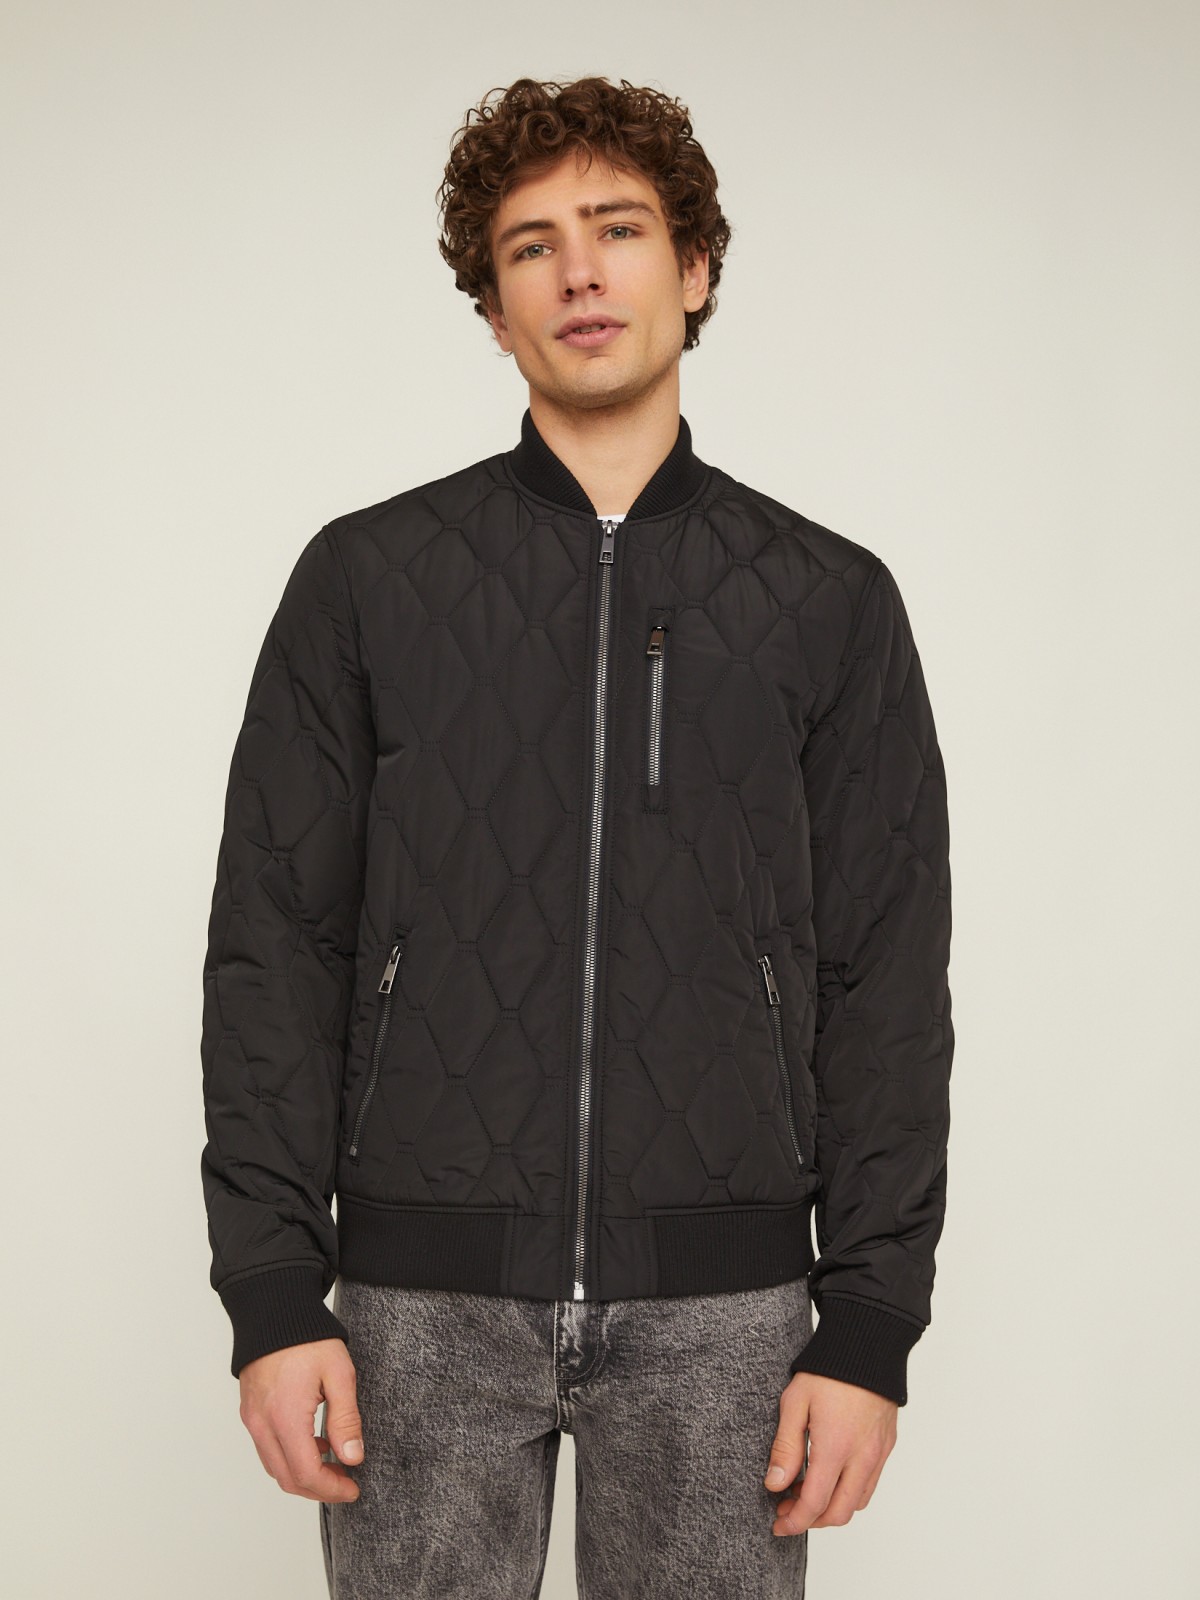 Утеплённая стёганая куртка-бомбер с воротником-стойкой zolla 014135139064, цвет черный, размер M - фото 5